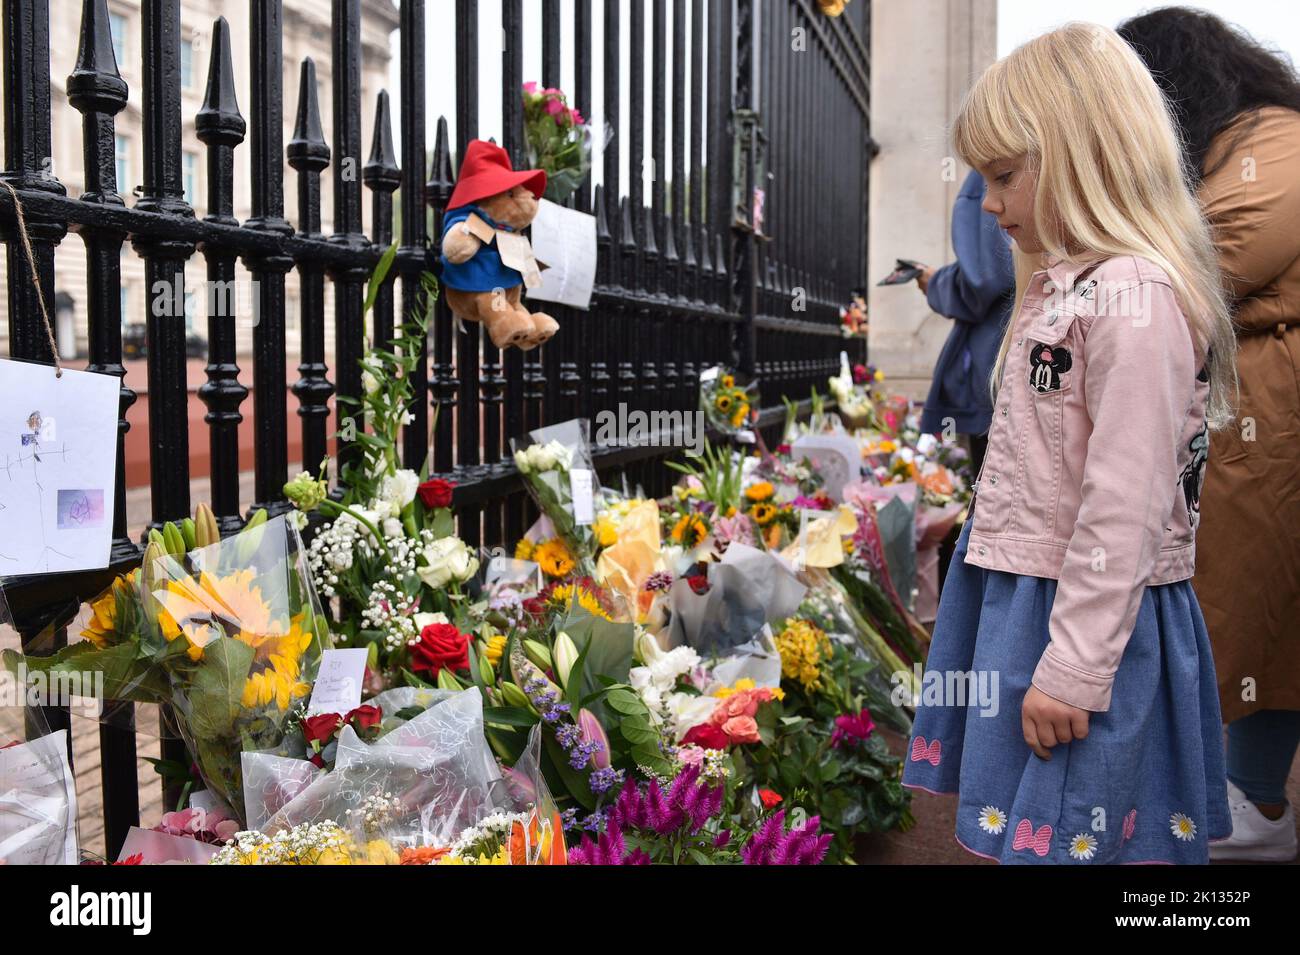 Ein Kind sieht sich die Blumenverehrungen an, die für Ihre Majestät Königin Elizabeth II. Im Buckingham Palace in London hinterlassen wurden. Stockfoto